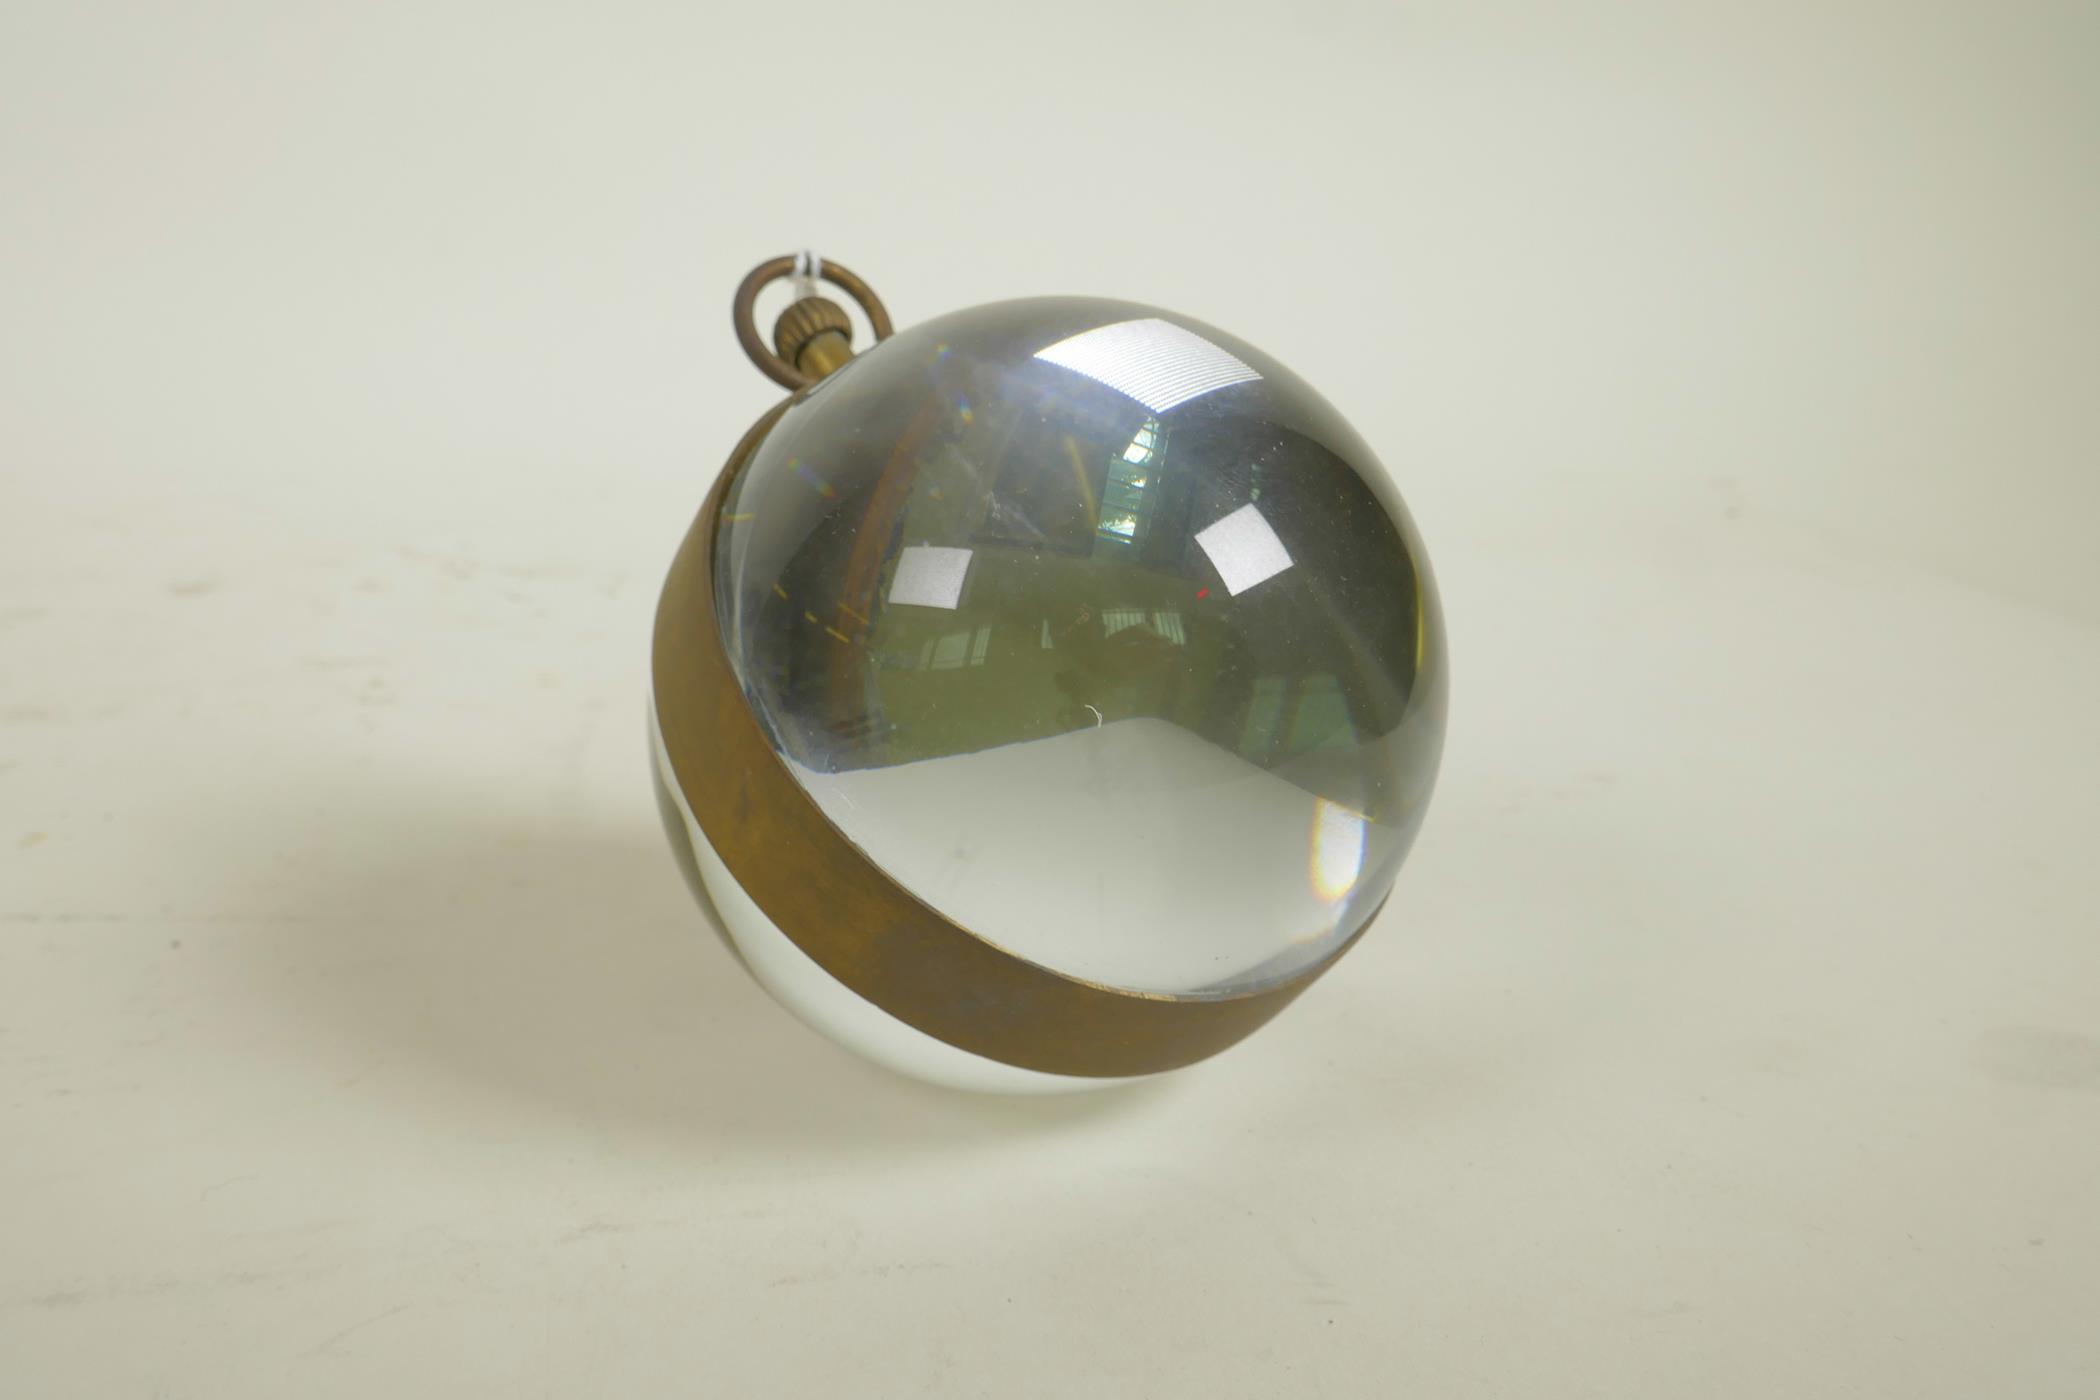 A glass ball desk, brass bound, clock, 3" diameter